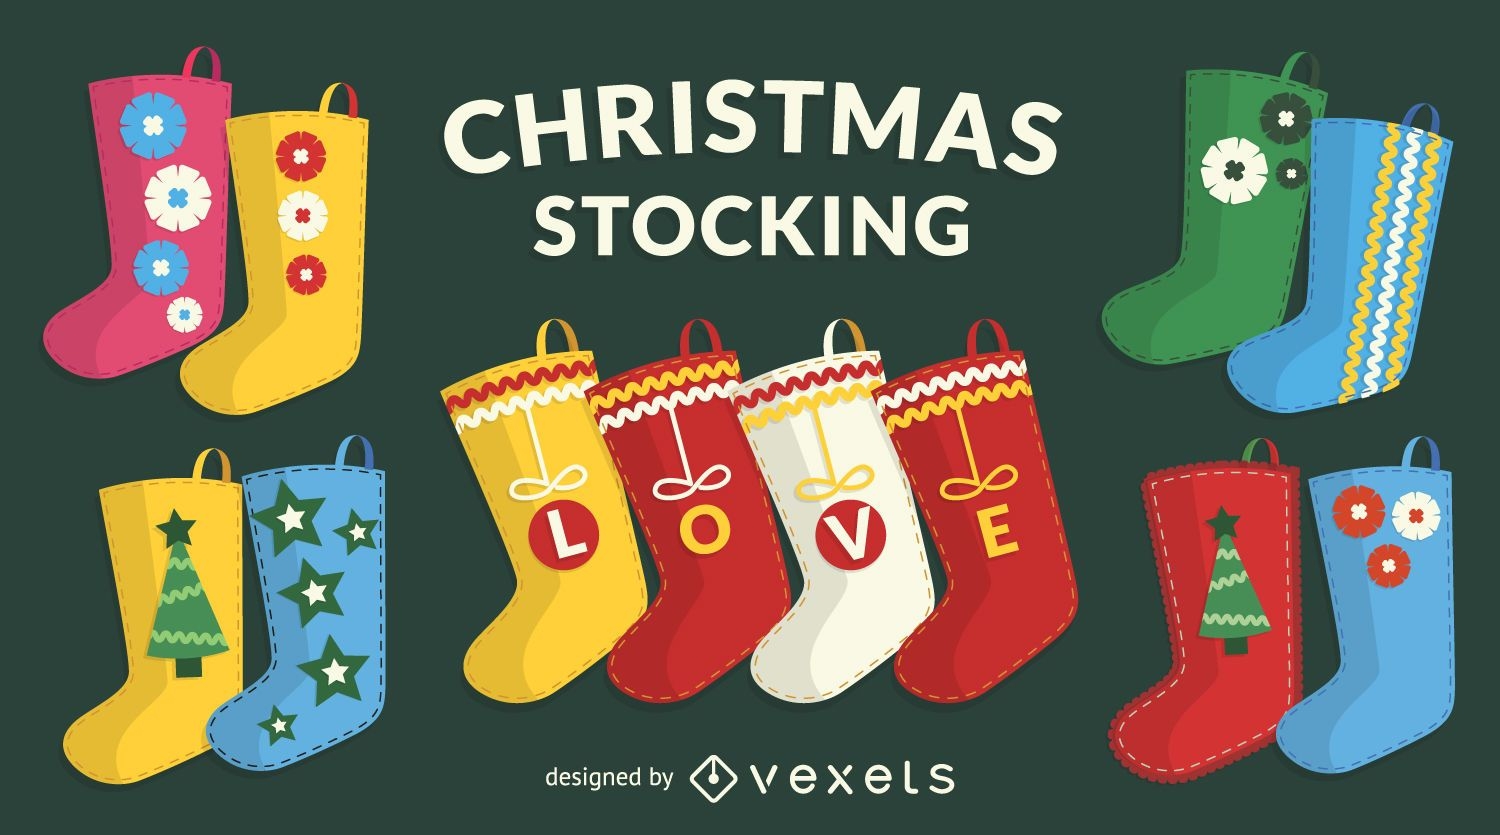 Diseños de calcetines navideños